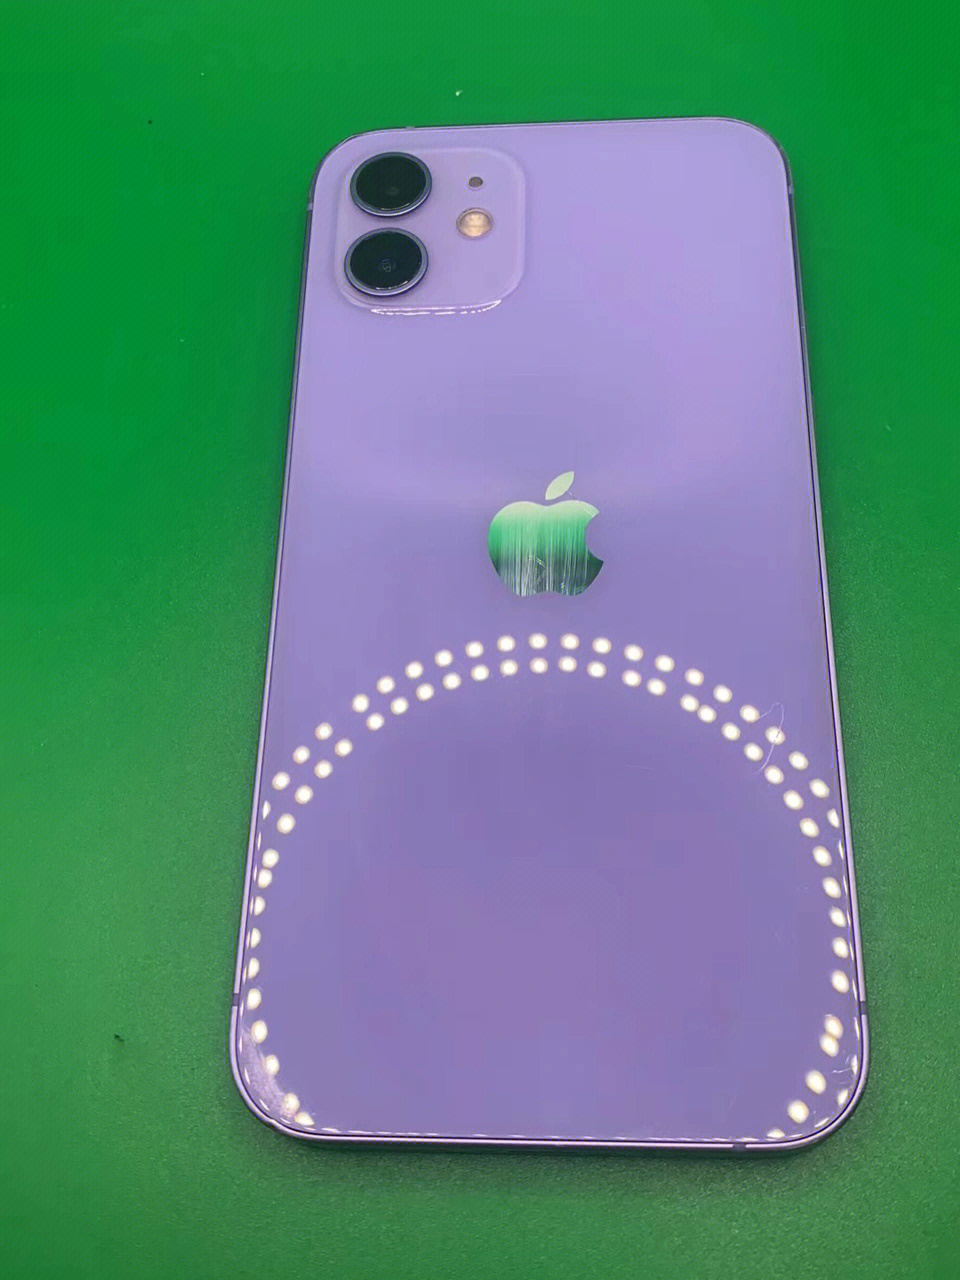 苹果12 国行 256g 仙女紫色 全原装不漏气 在保100天左右 电池96